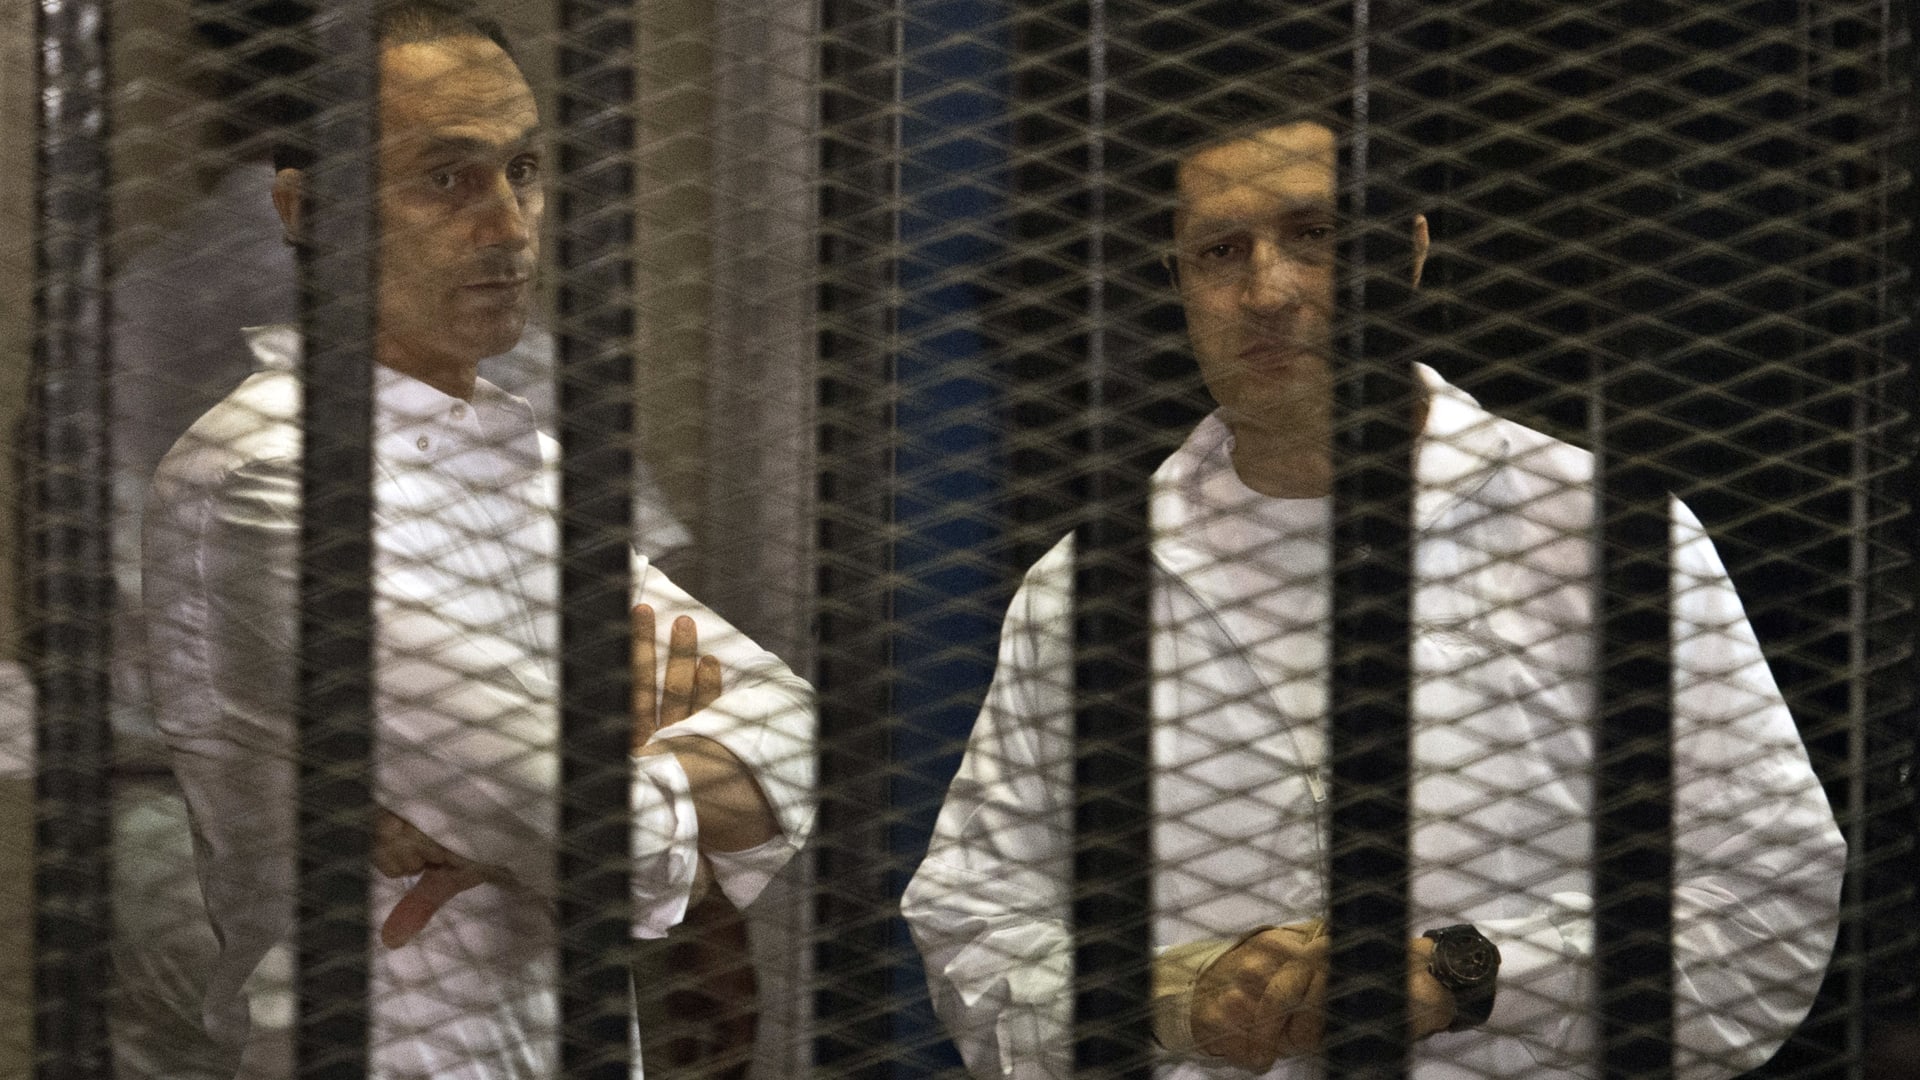 بعد أمر إلقاء القبض عليه بقضية البورصة.. علاء مبارك يتمسك بـ"ظهور الحقيقة" 